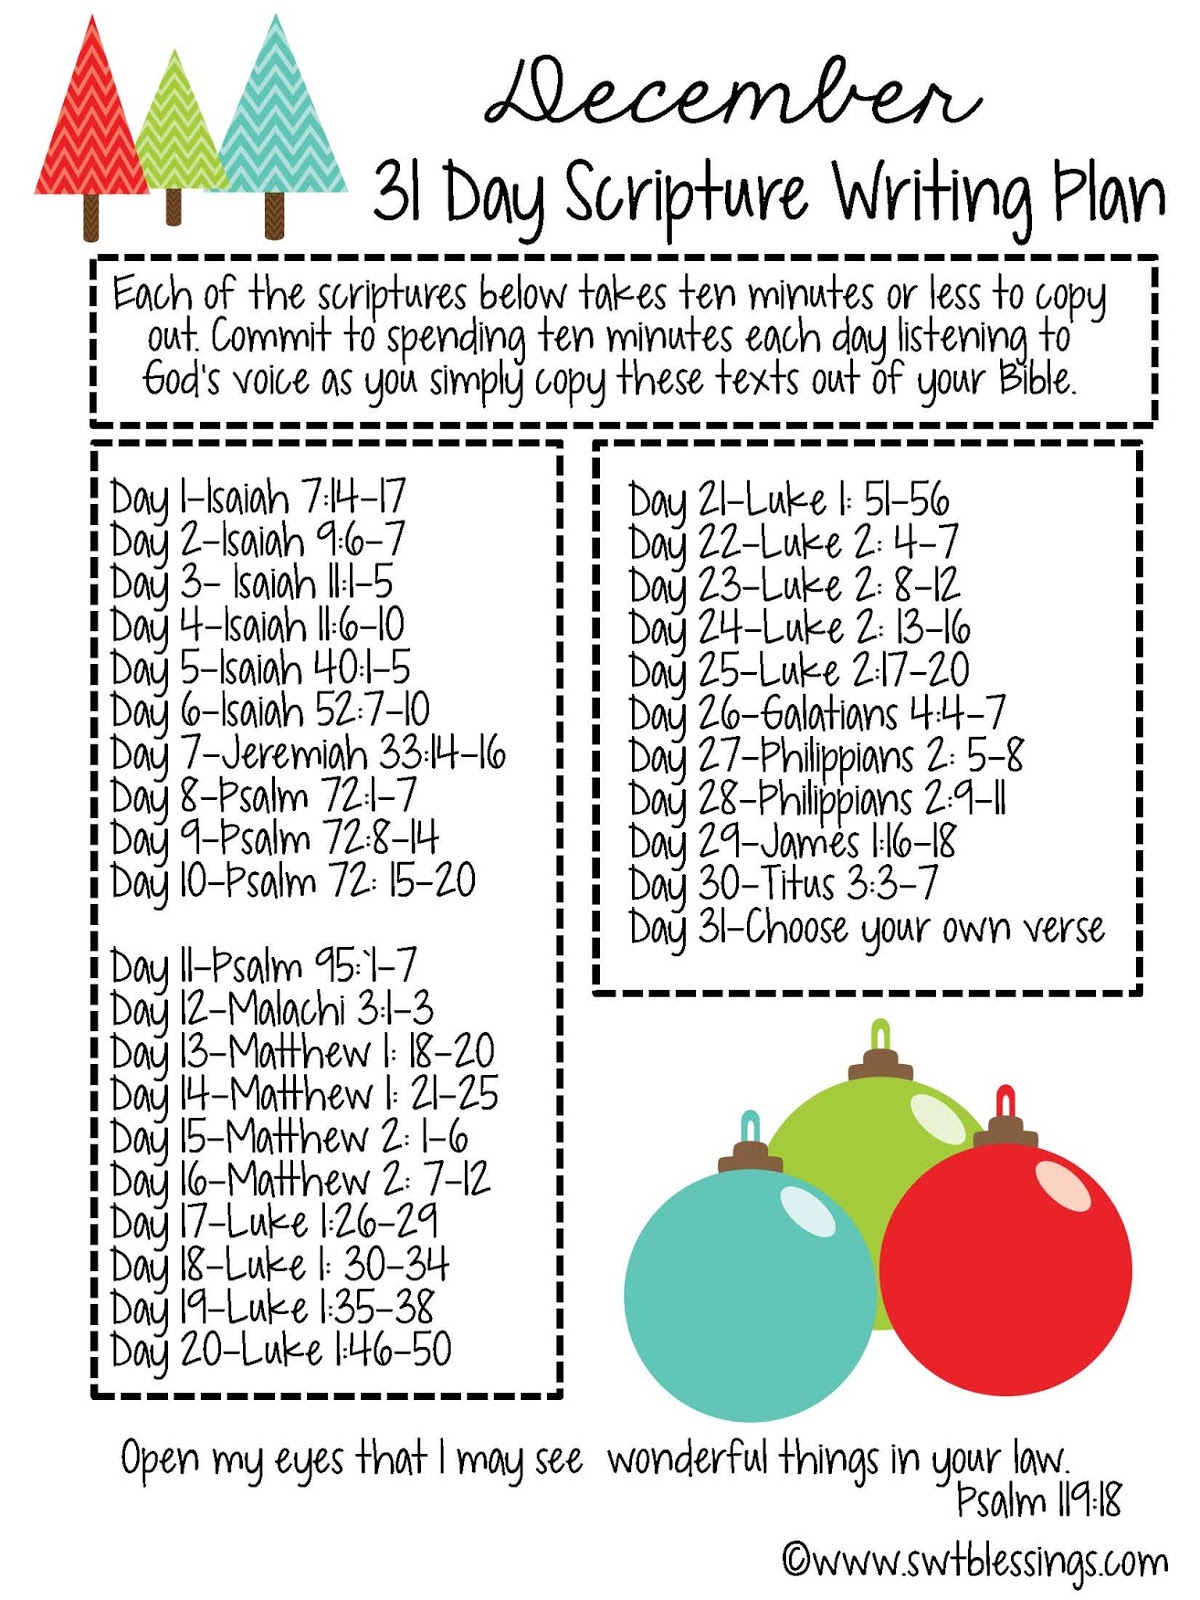 sweet-blessings-december-scripture-writing-plan-bible-journaling